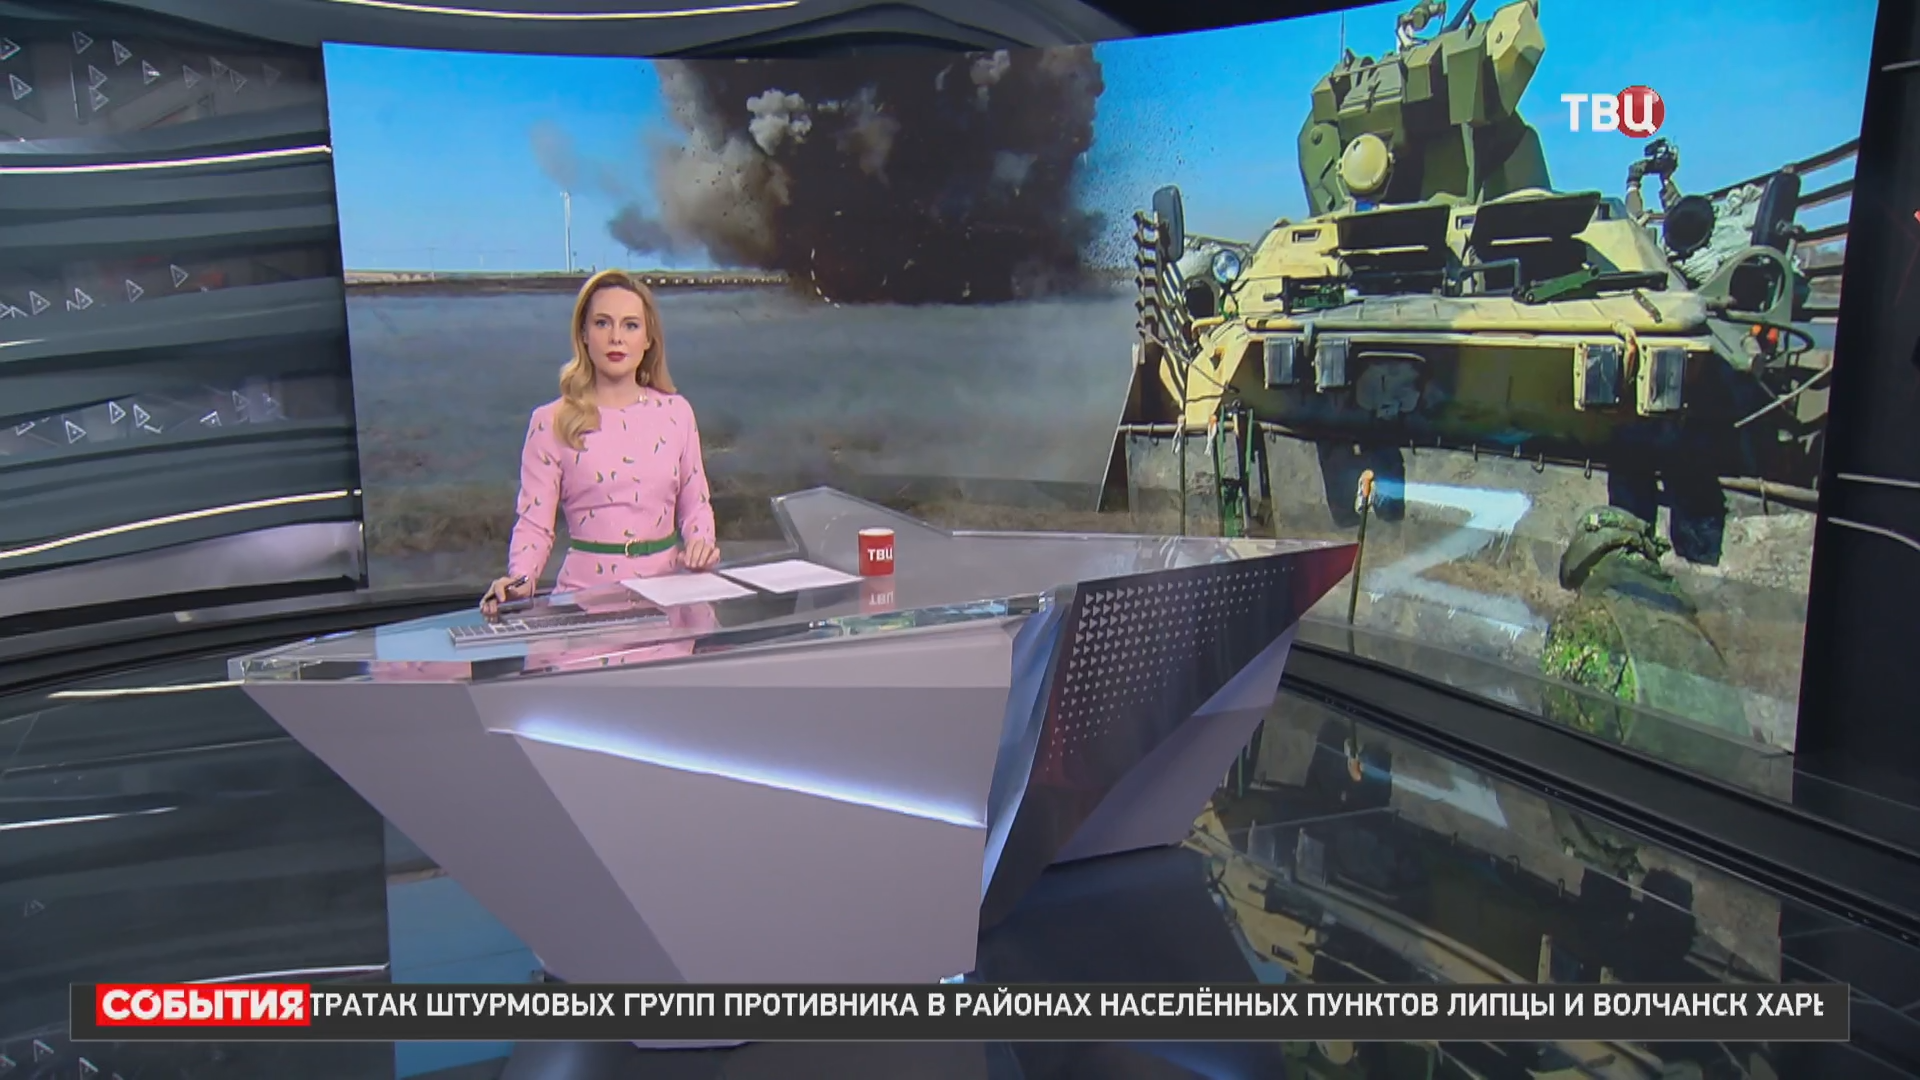 Наступление в Донбассе идет сразу с трех направлений / События на ТВЦ